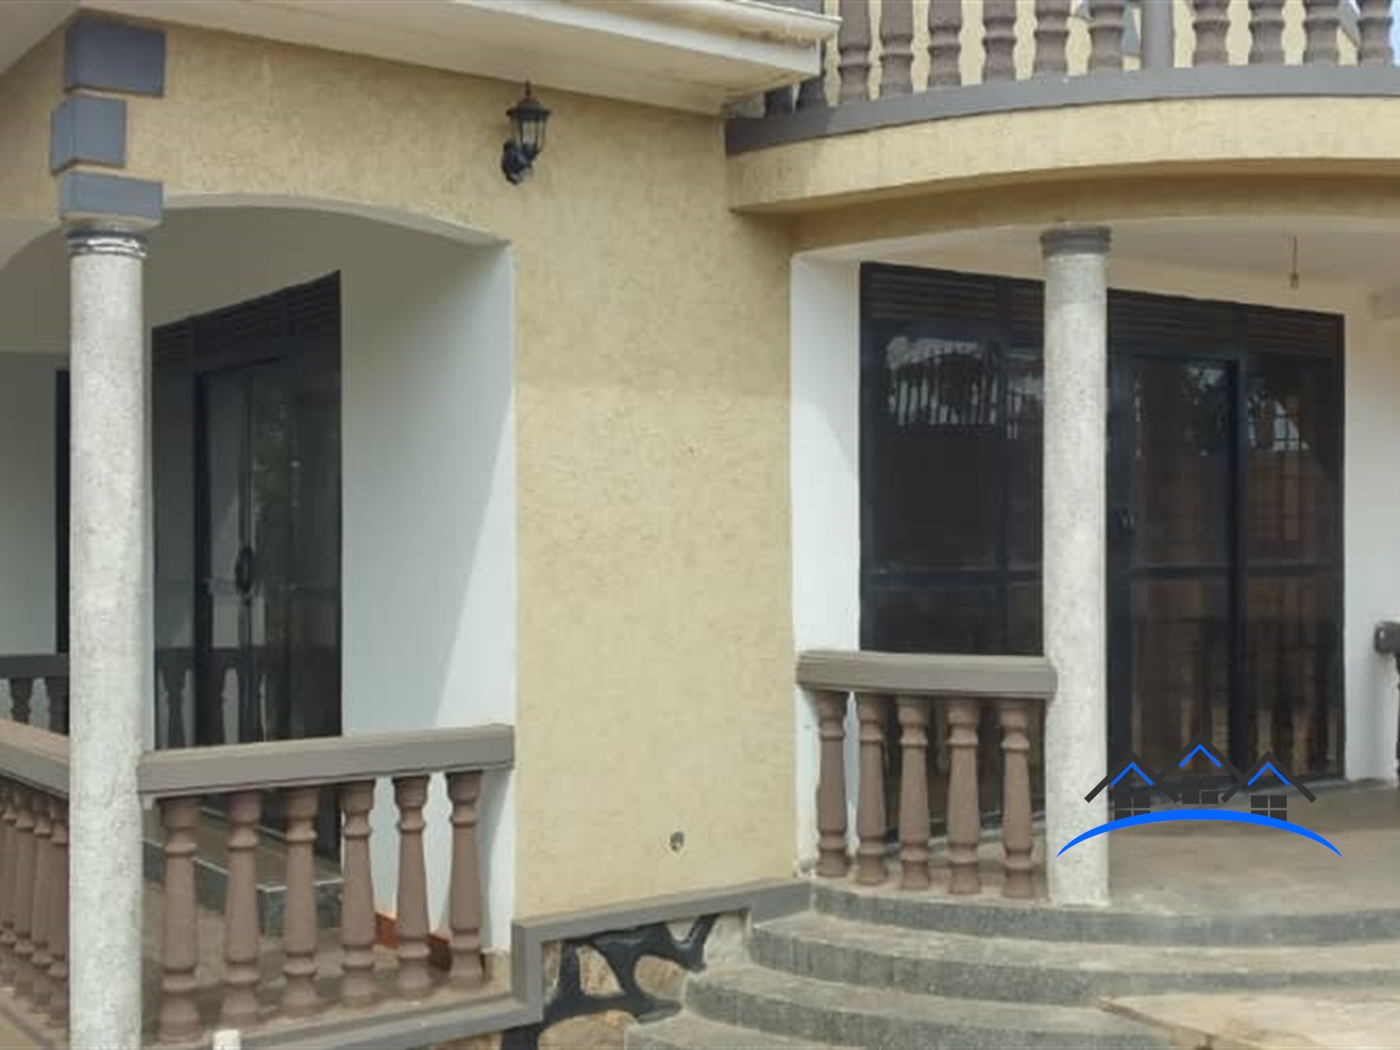 Duplex for sale in Sonde Mukono